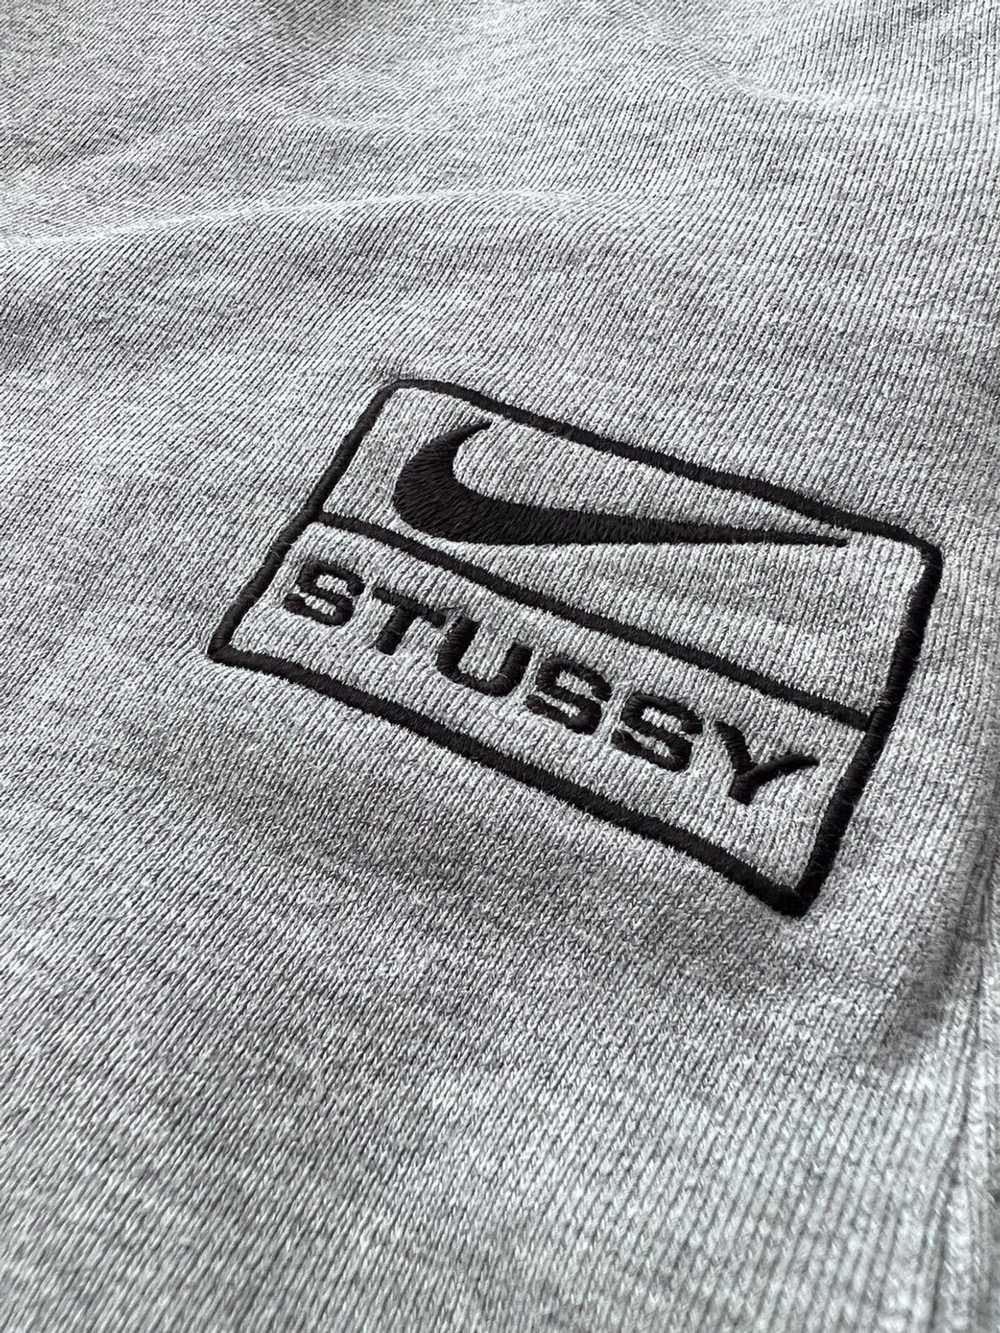 Nike × Stussy Nike x Stussy NRG BR Fleece Pant - image 2